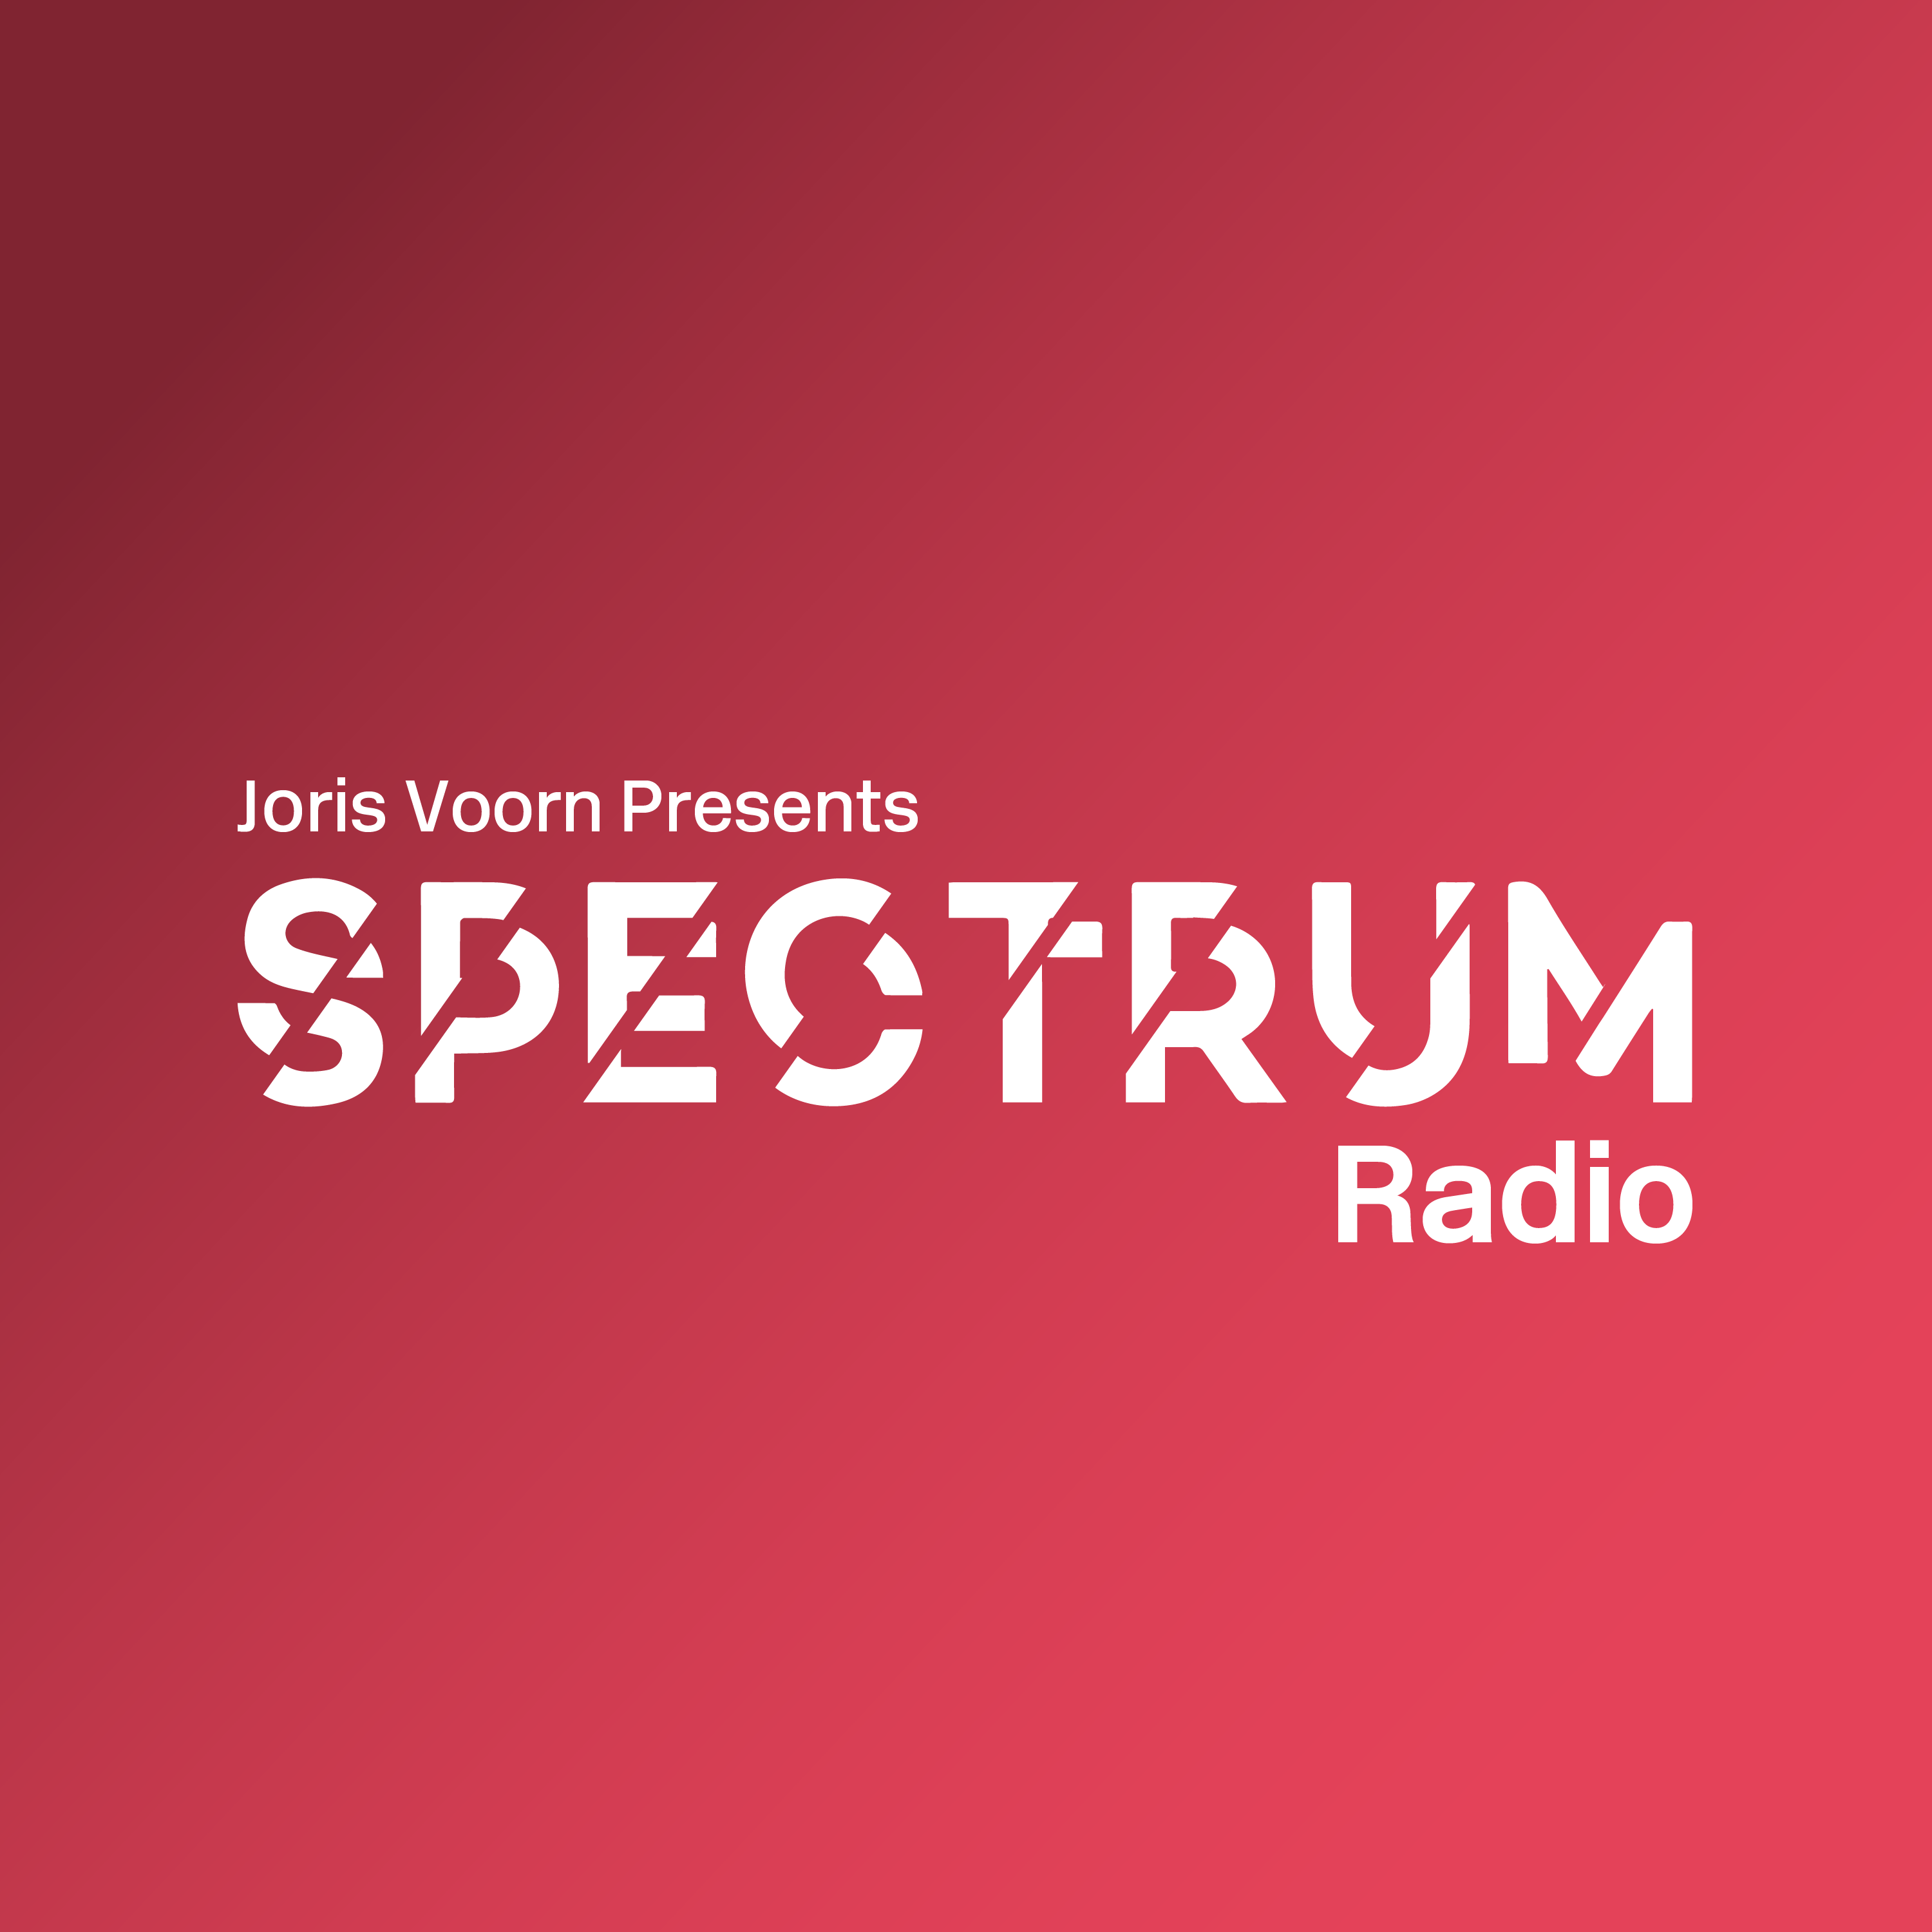 Delta Podcasts - Spectrum Radio by Joris Voorn (03.06.2018)